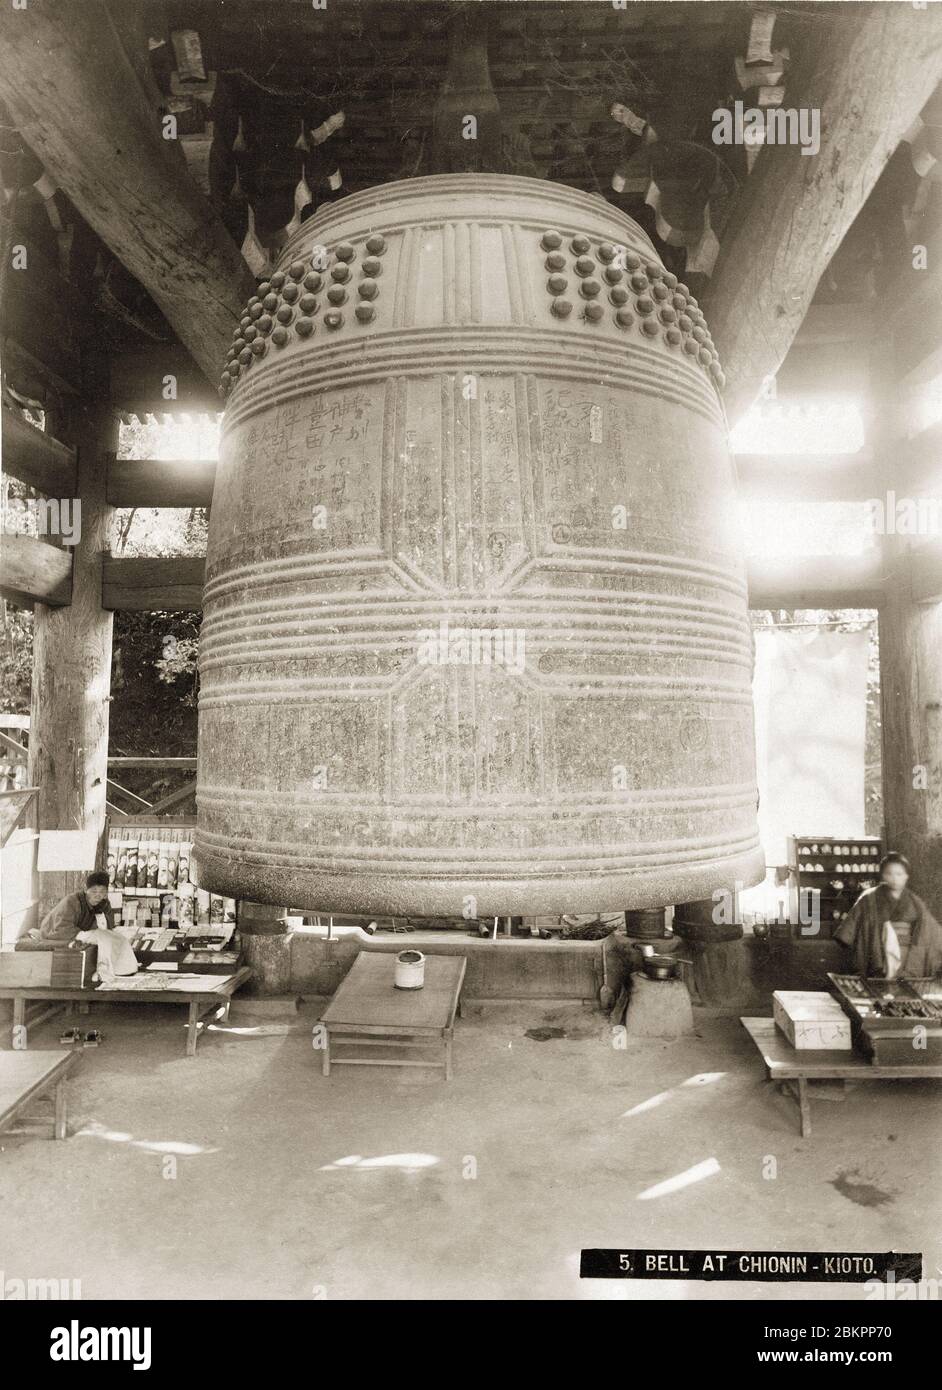 [ 1890er Japan - Bronze Temple Bell, Kyoto ] - die Bronze-Tempelglocke des Chion-in buddhistischen Tempels im Higashiyama Bezirk in Kyoto. Die Glocke wurde Anfang des 17. Jahrhunderts gegossen und war 4.5 Meter hoch. Vintage Albumin-Fotografie aus dem 19. Jahrhundert. Stockfoto